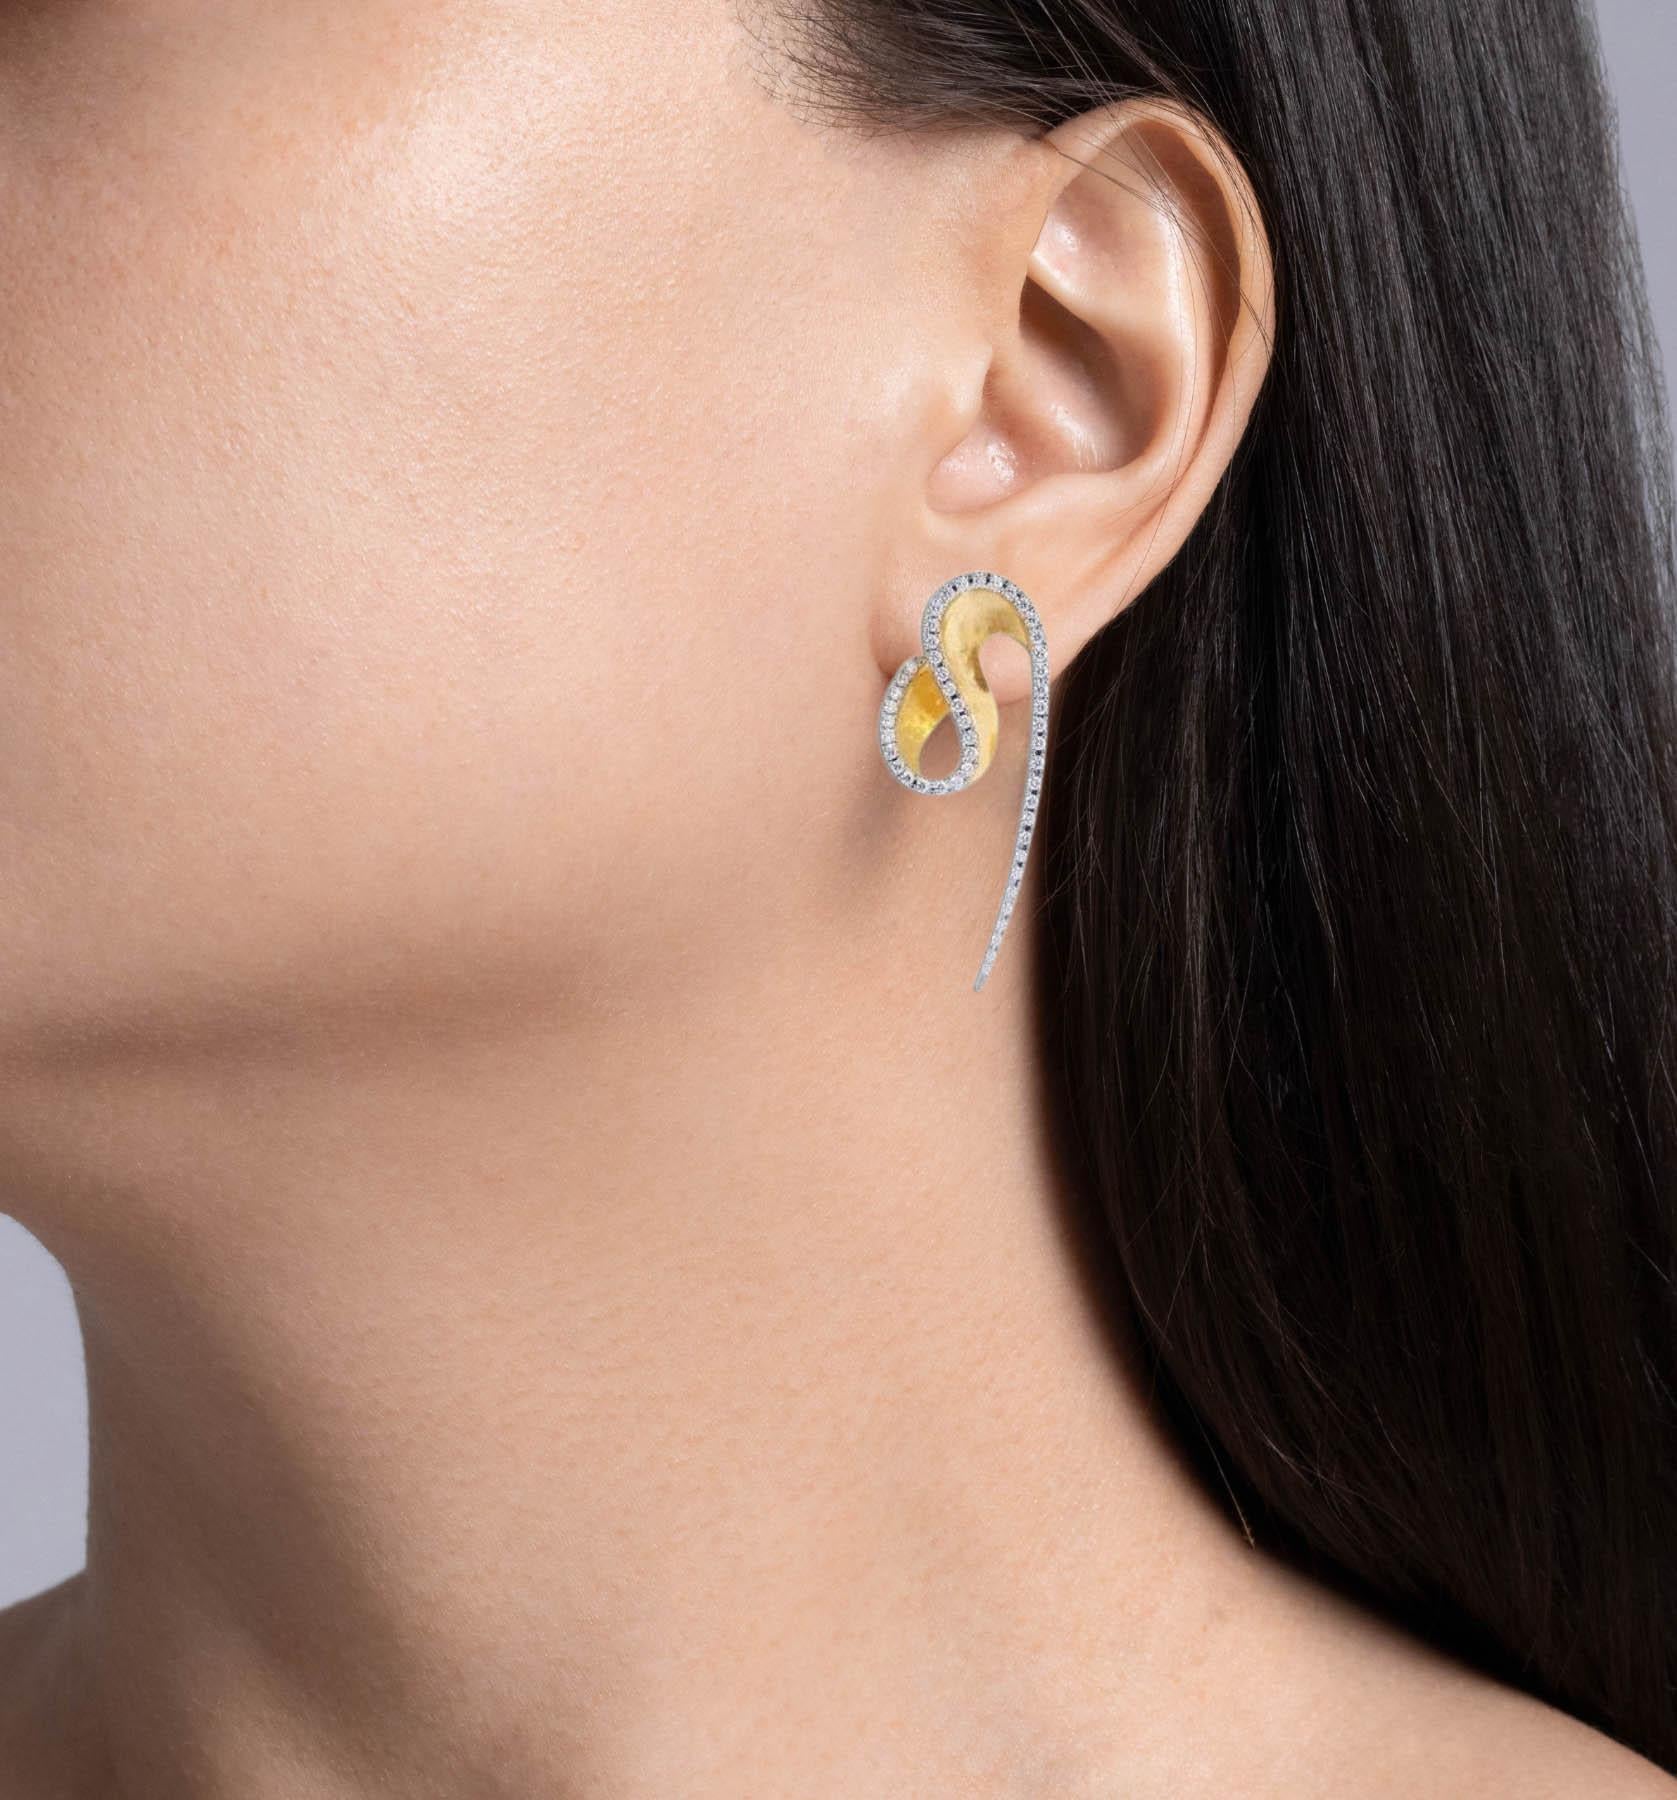 Boucles d'oreilles Talay Wave en or jaune 18k avec diamants Kavant & Sharart 
Serti de diamants ronds et brillants ; poids total estimé à 0,92 carats.
Chaque boucle d'oreille mesure près de 41 mm de long et 12 mm de large. 
Le poids total des